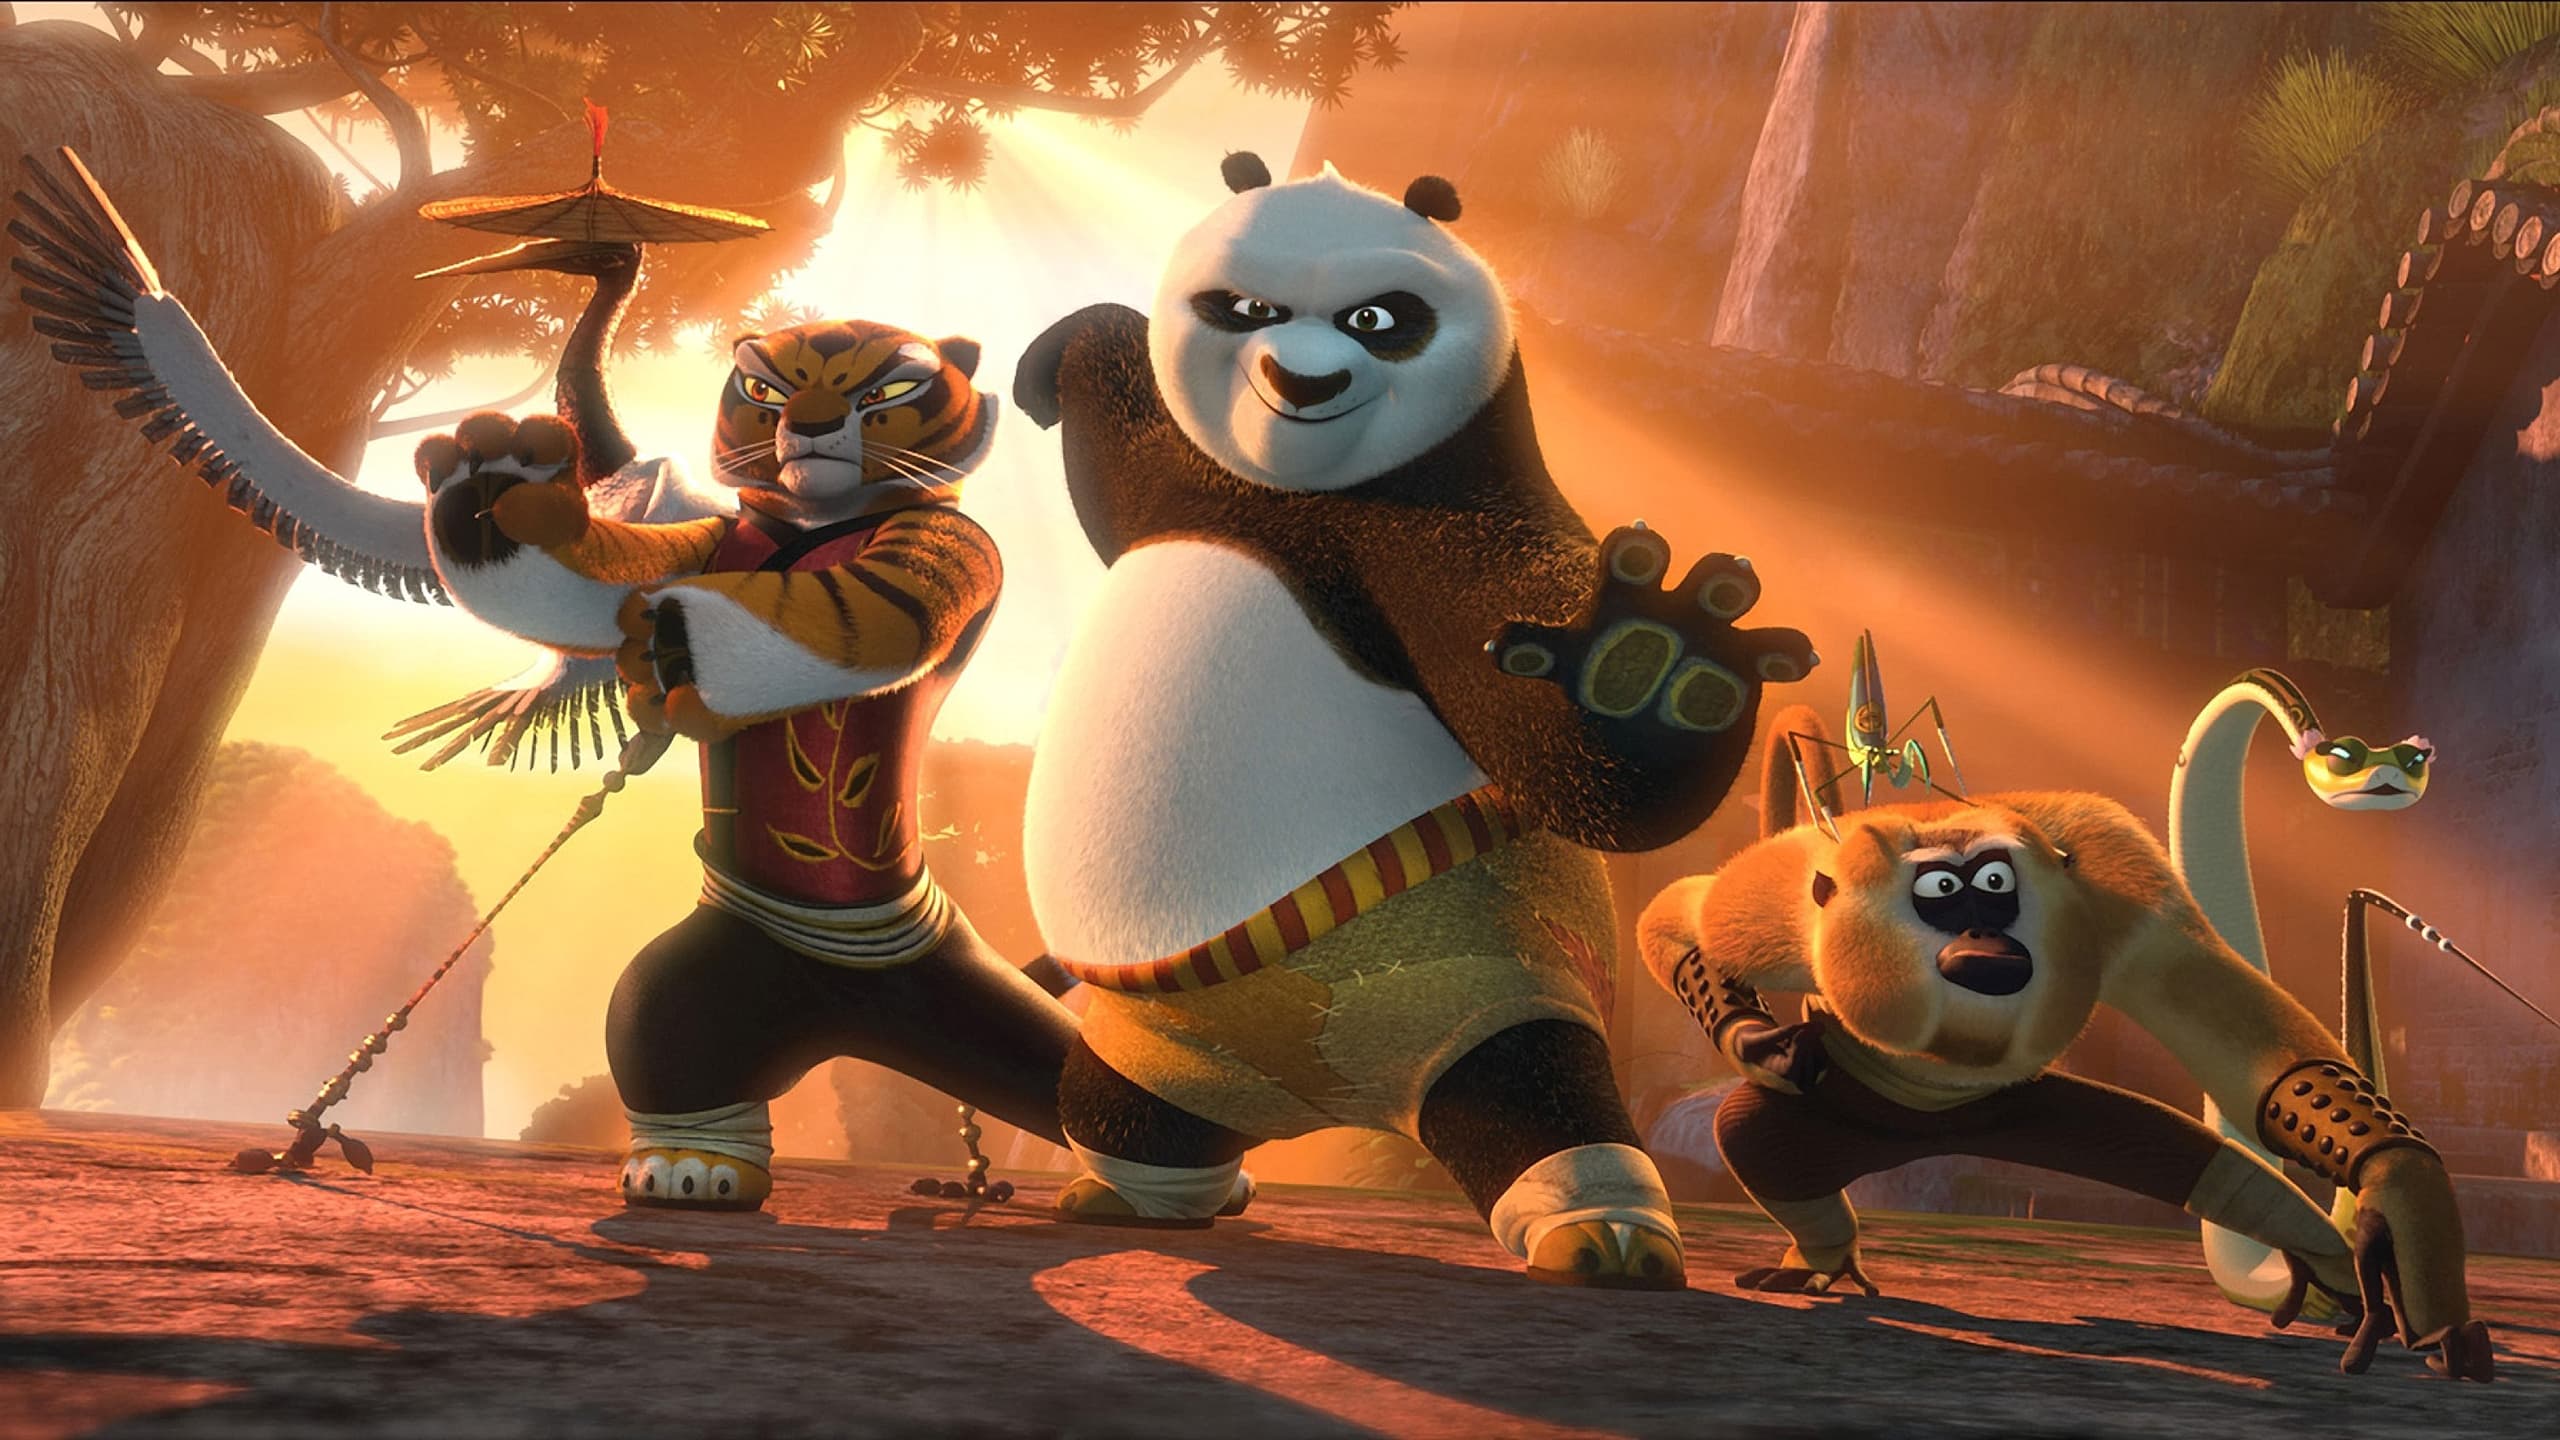 Kung Fu Gấu Trúc: Bí Mật Ngũ Hình Quyền - Kungfu Panda 2: The Secret Of The Furious Five